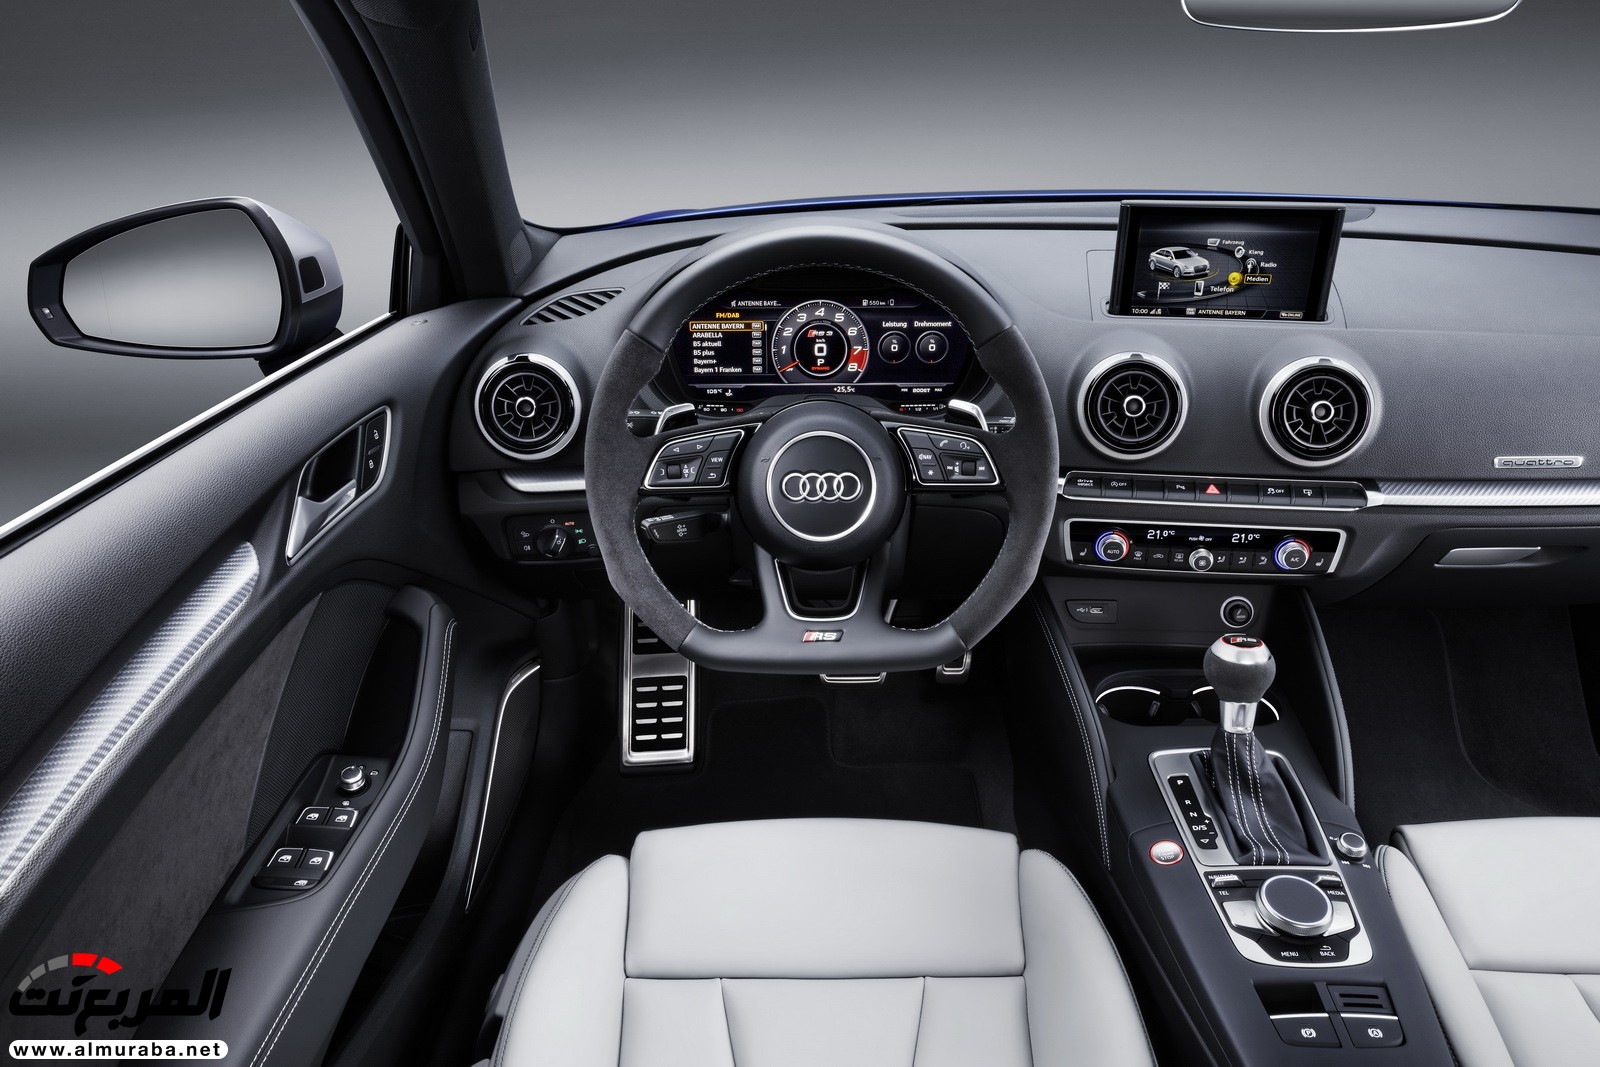 "أودي" تكشف عن RS3 الجديدة كليا 2018 بقوة 395 حصان Audi 25